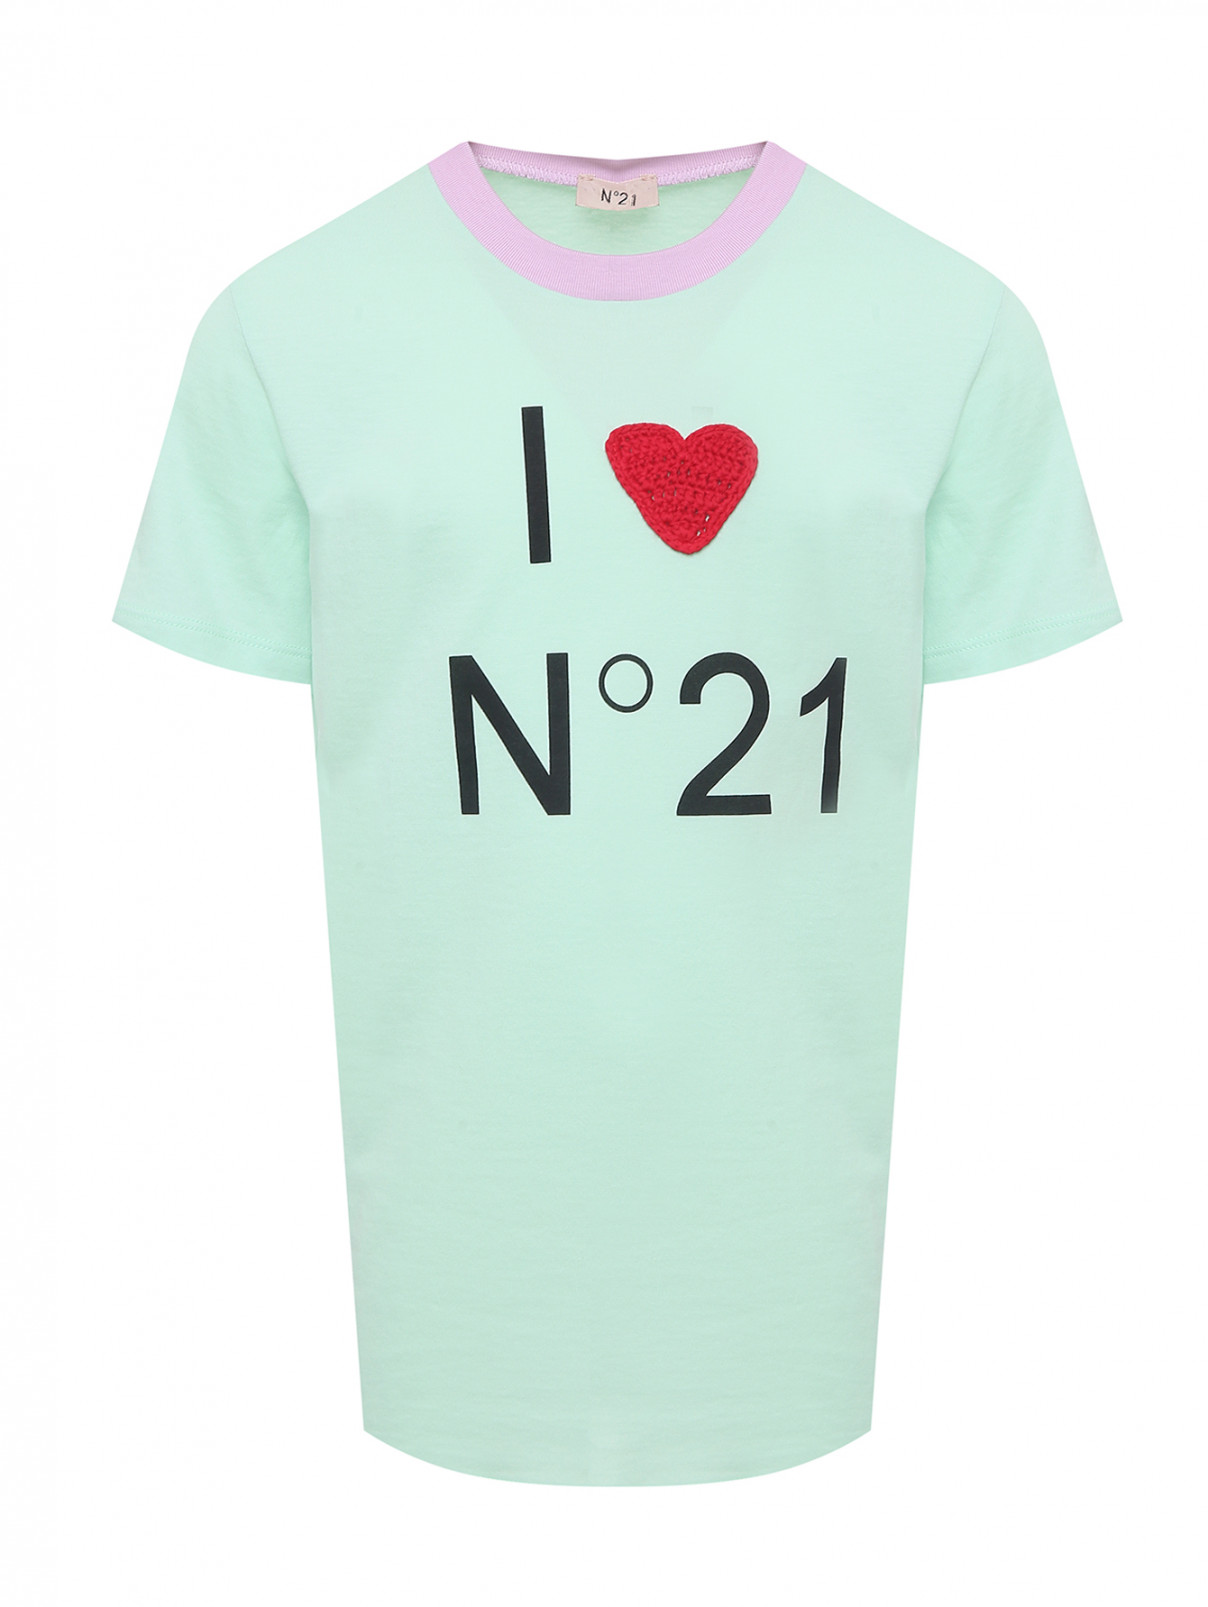 Хлопковая футболка с принтом и аппликацией N21  –  Общий вид  – Цвет:  Зеленый